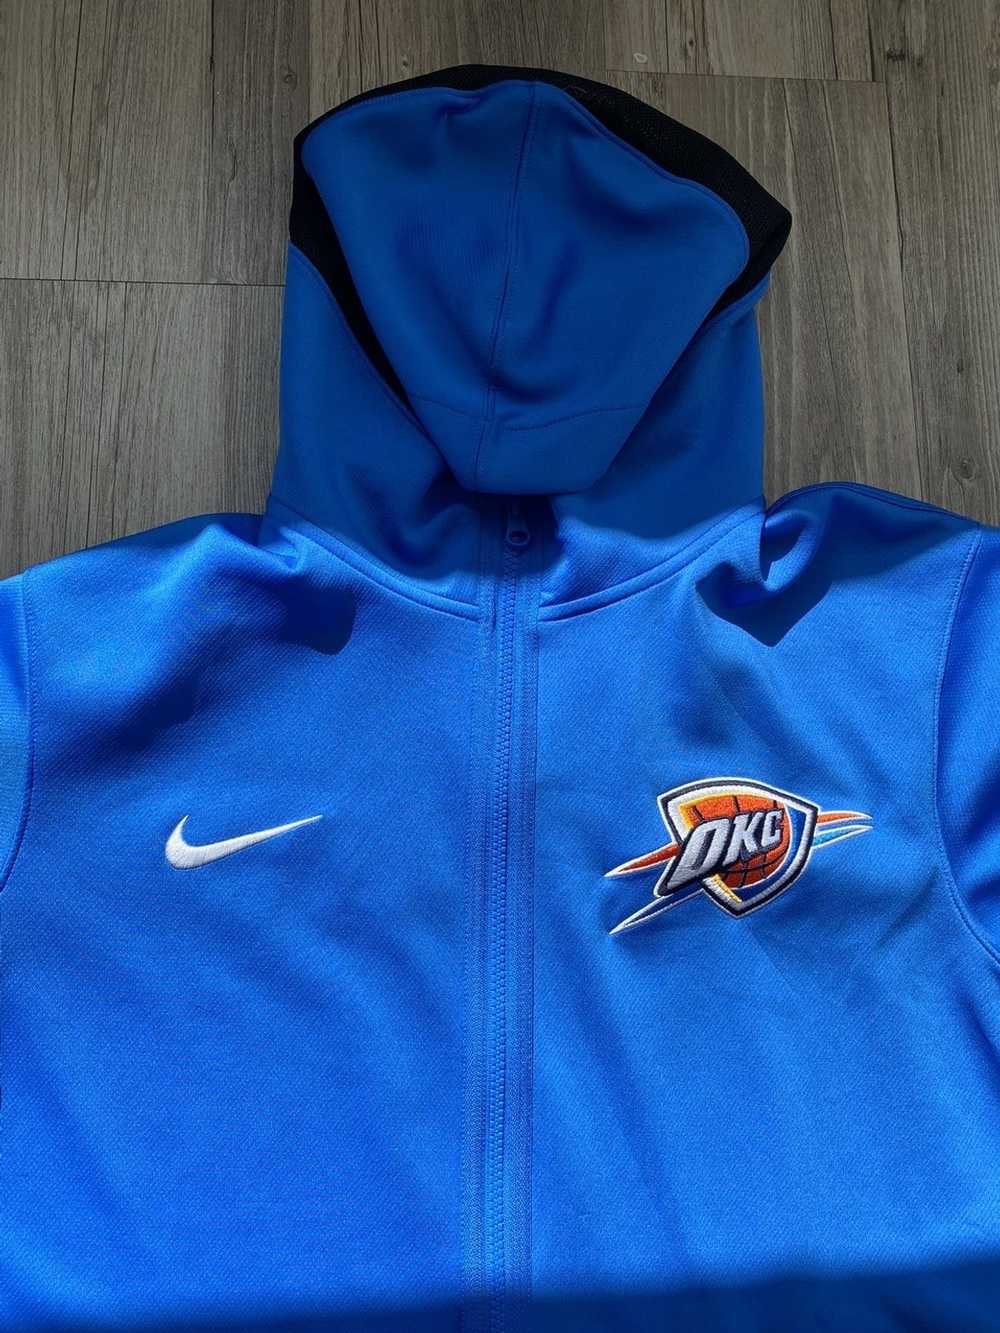 NBA × Nike Nike NBA on court zip up hoodie - image 2